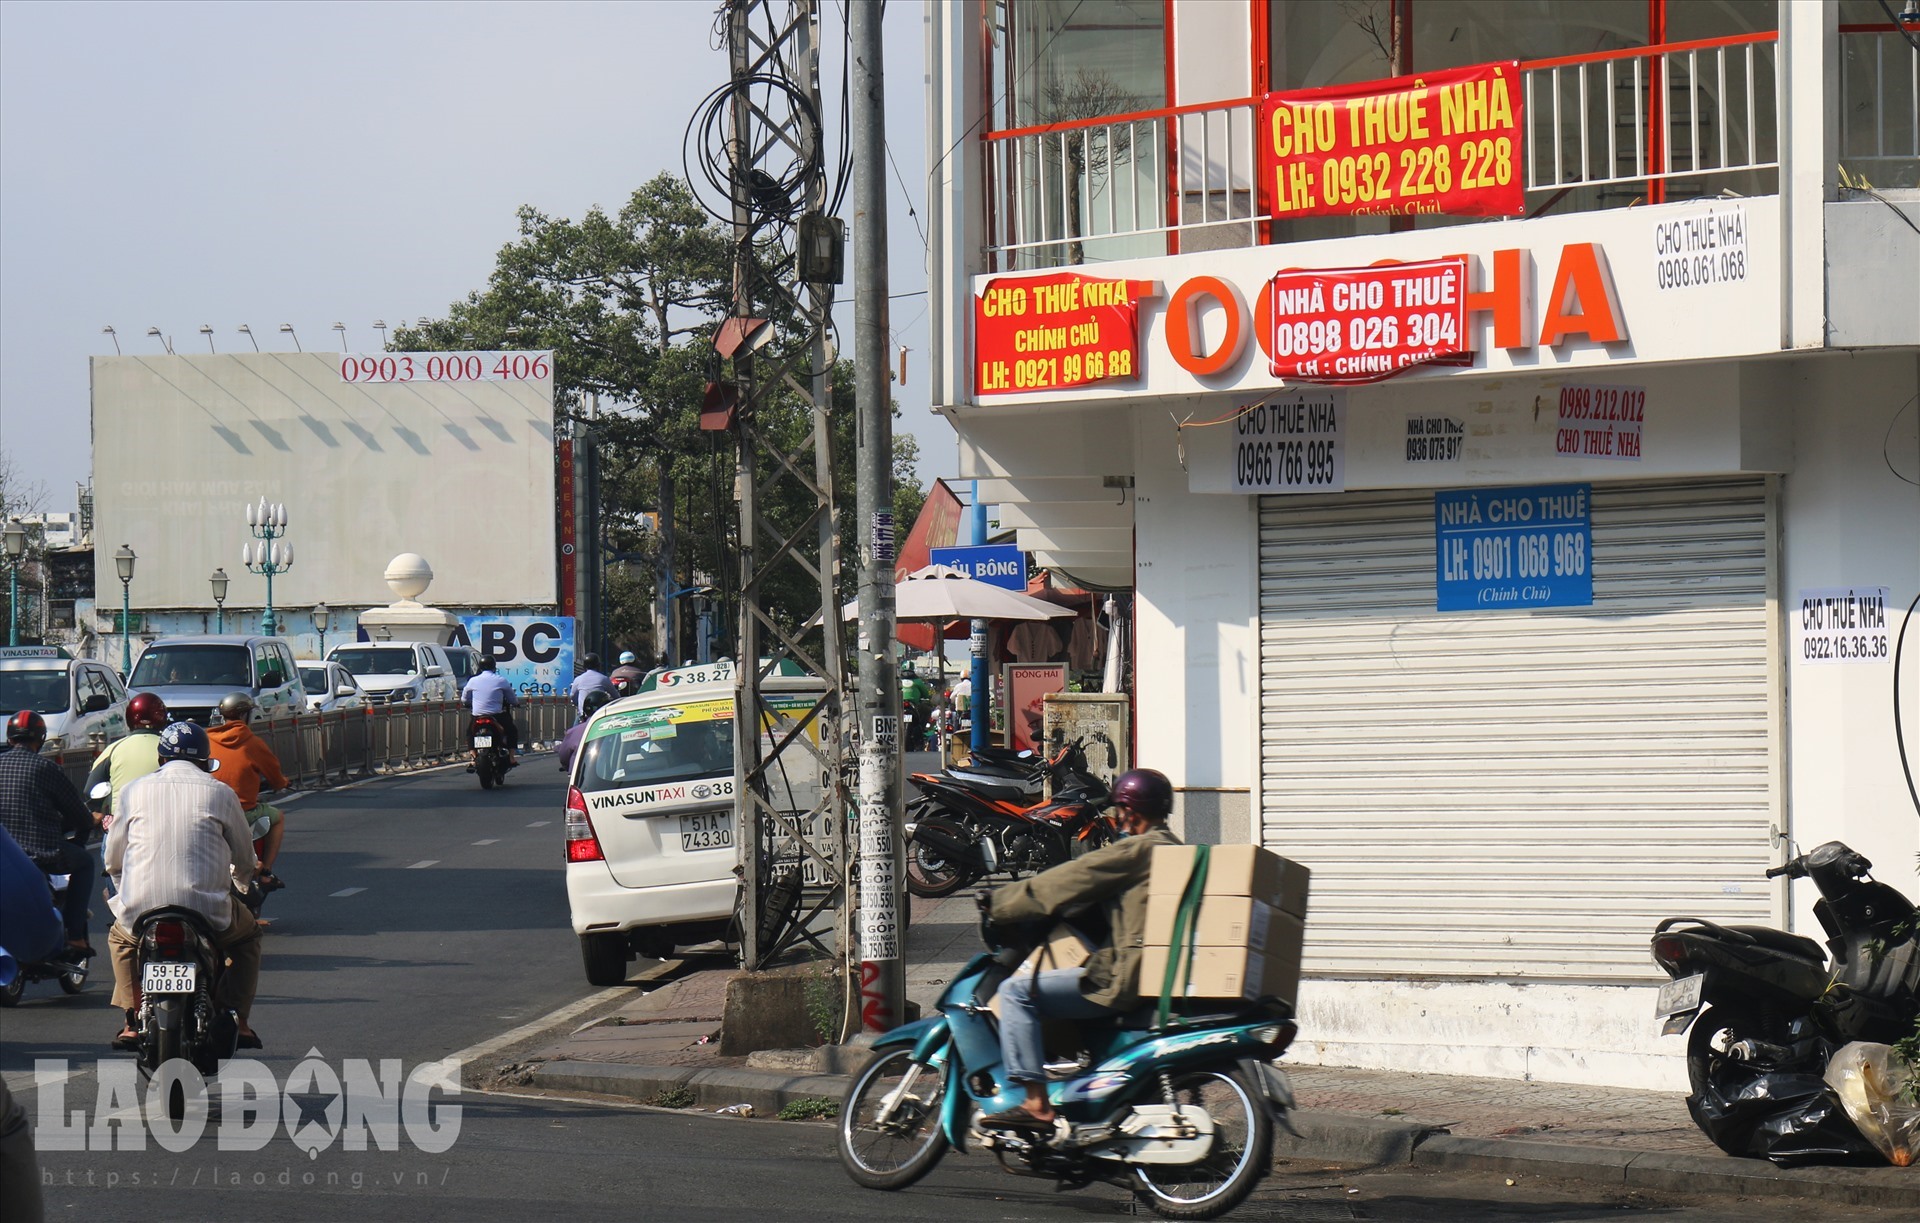 Cửa hàng nằm ở ngã ba Nguyễn Huy Tự - Đinh Tiên Hoàng (Quận 1) nơi được cho là địa điểm thu hút khách hàng ở các quận trung tâm như quận 1, quận 3 và các quận ngoài trung tâm: quận Bình Thạnh, quận Phú Nhuận... cũng được lần lượt treo biển “Cho thuê mặt bằng” như nhiều cửa hàng khác.